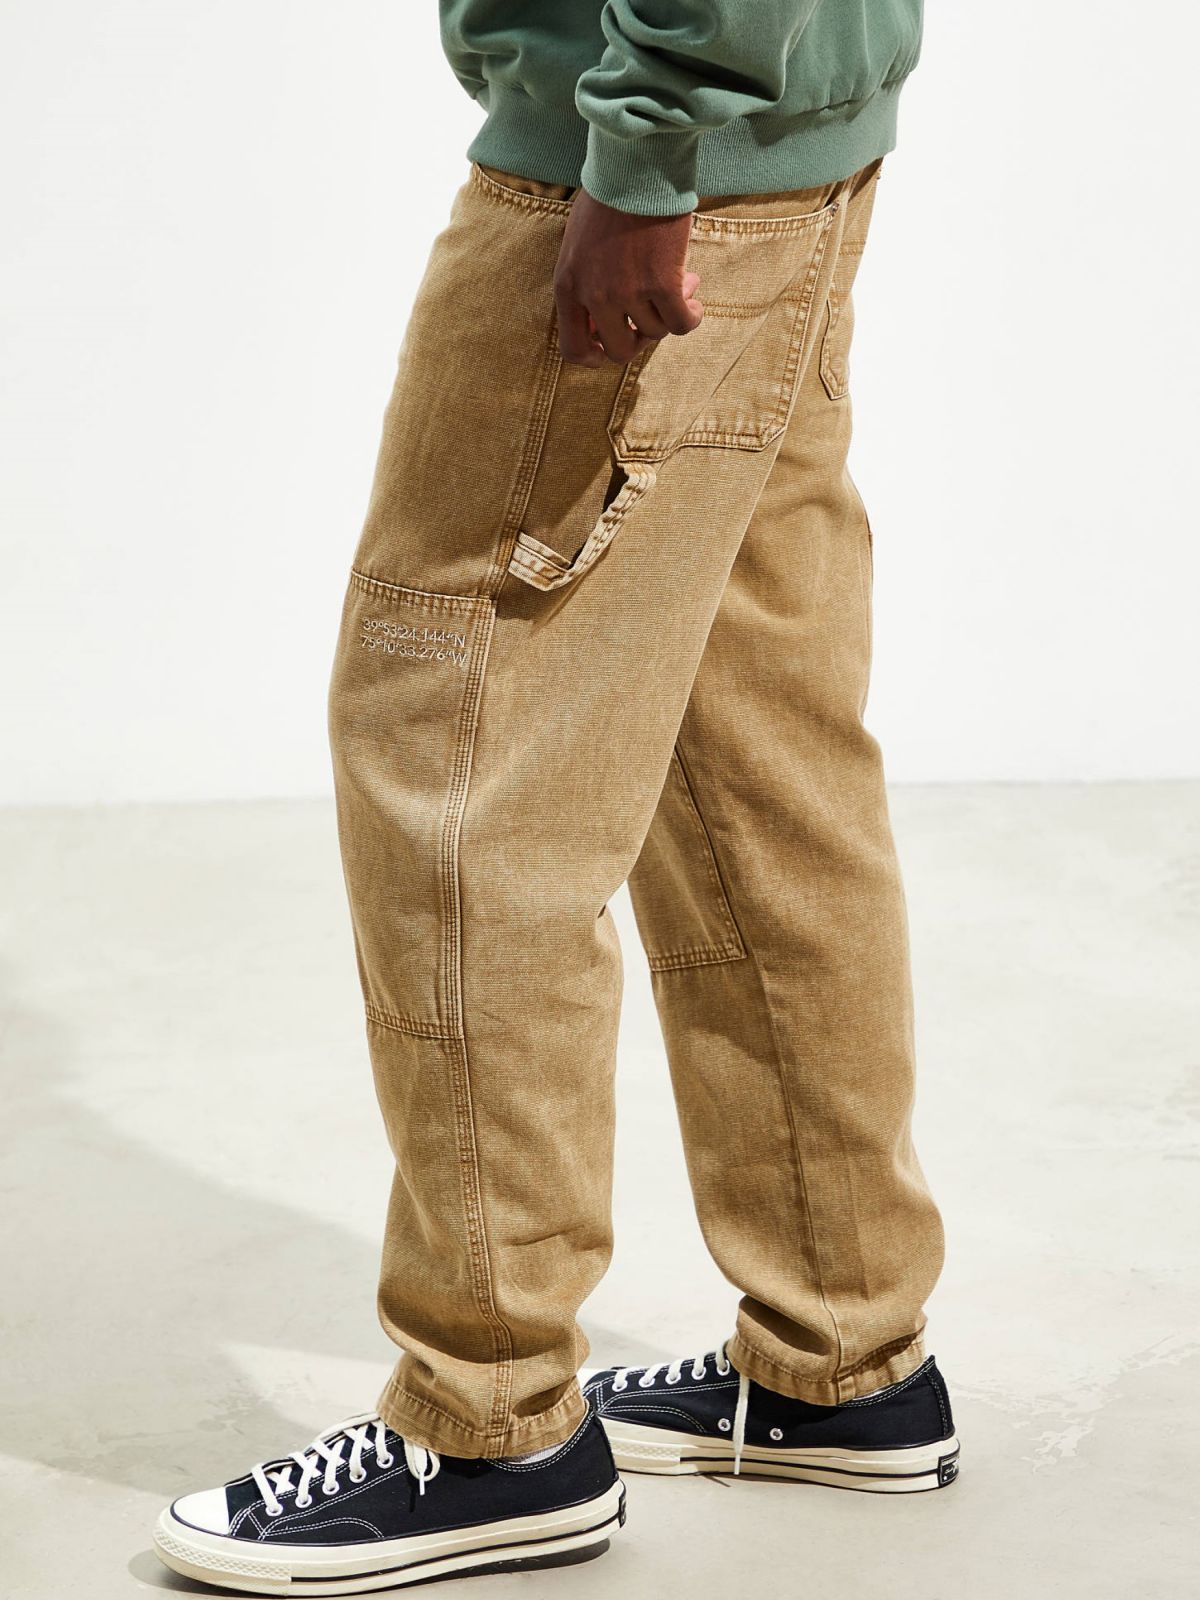  מכנסיים ארוכים Slim-Fit עם תפרים מודגשים BDG של URBAN OUTFITTERS